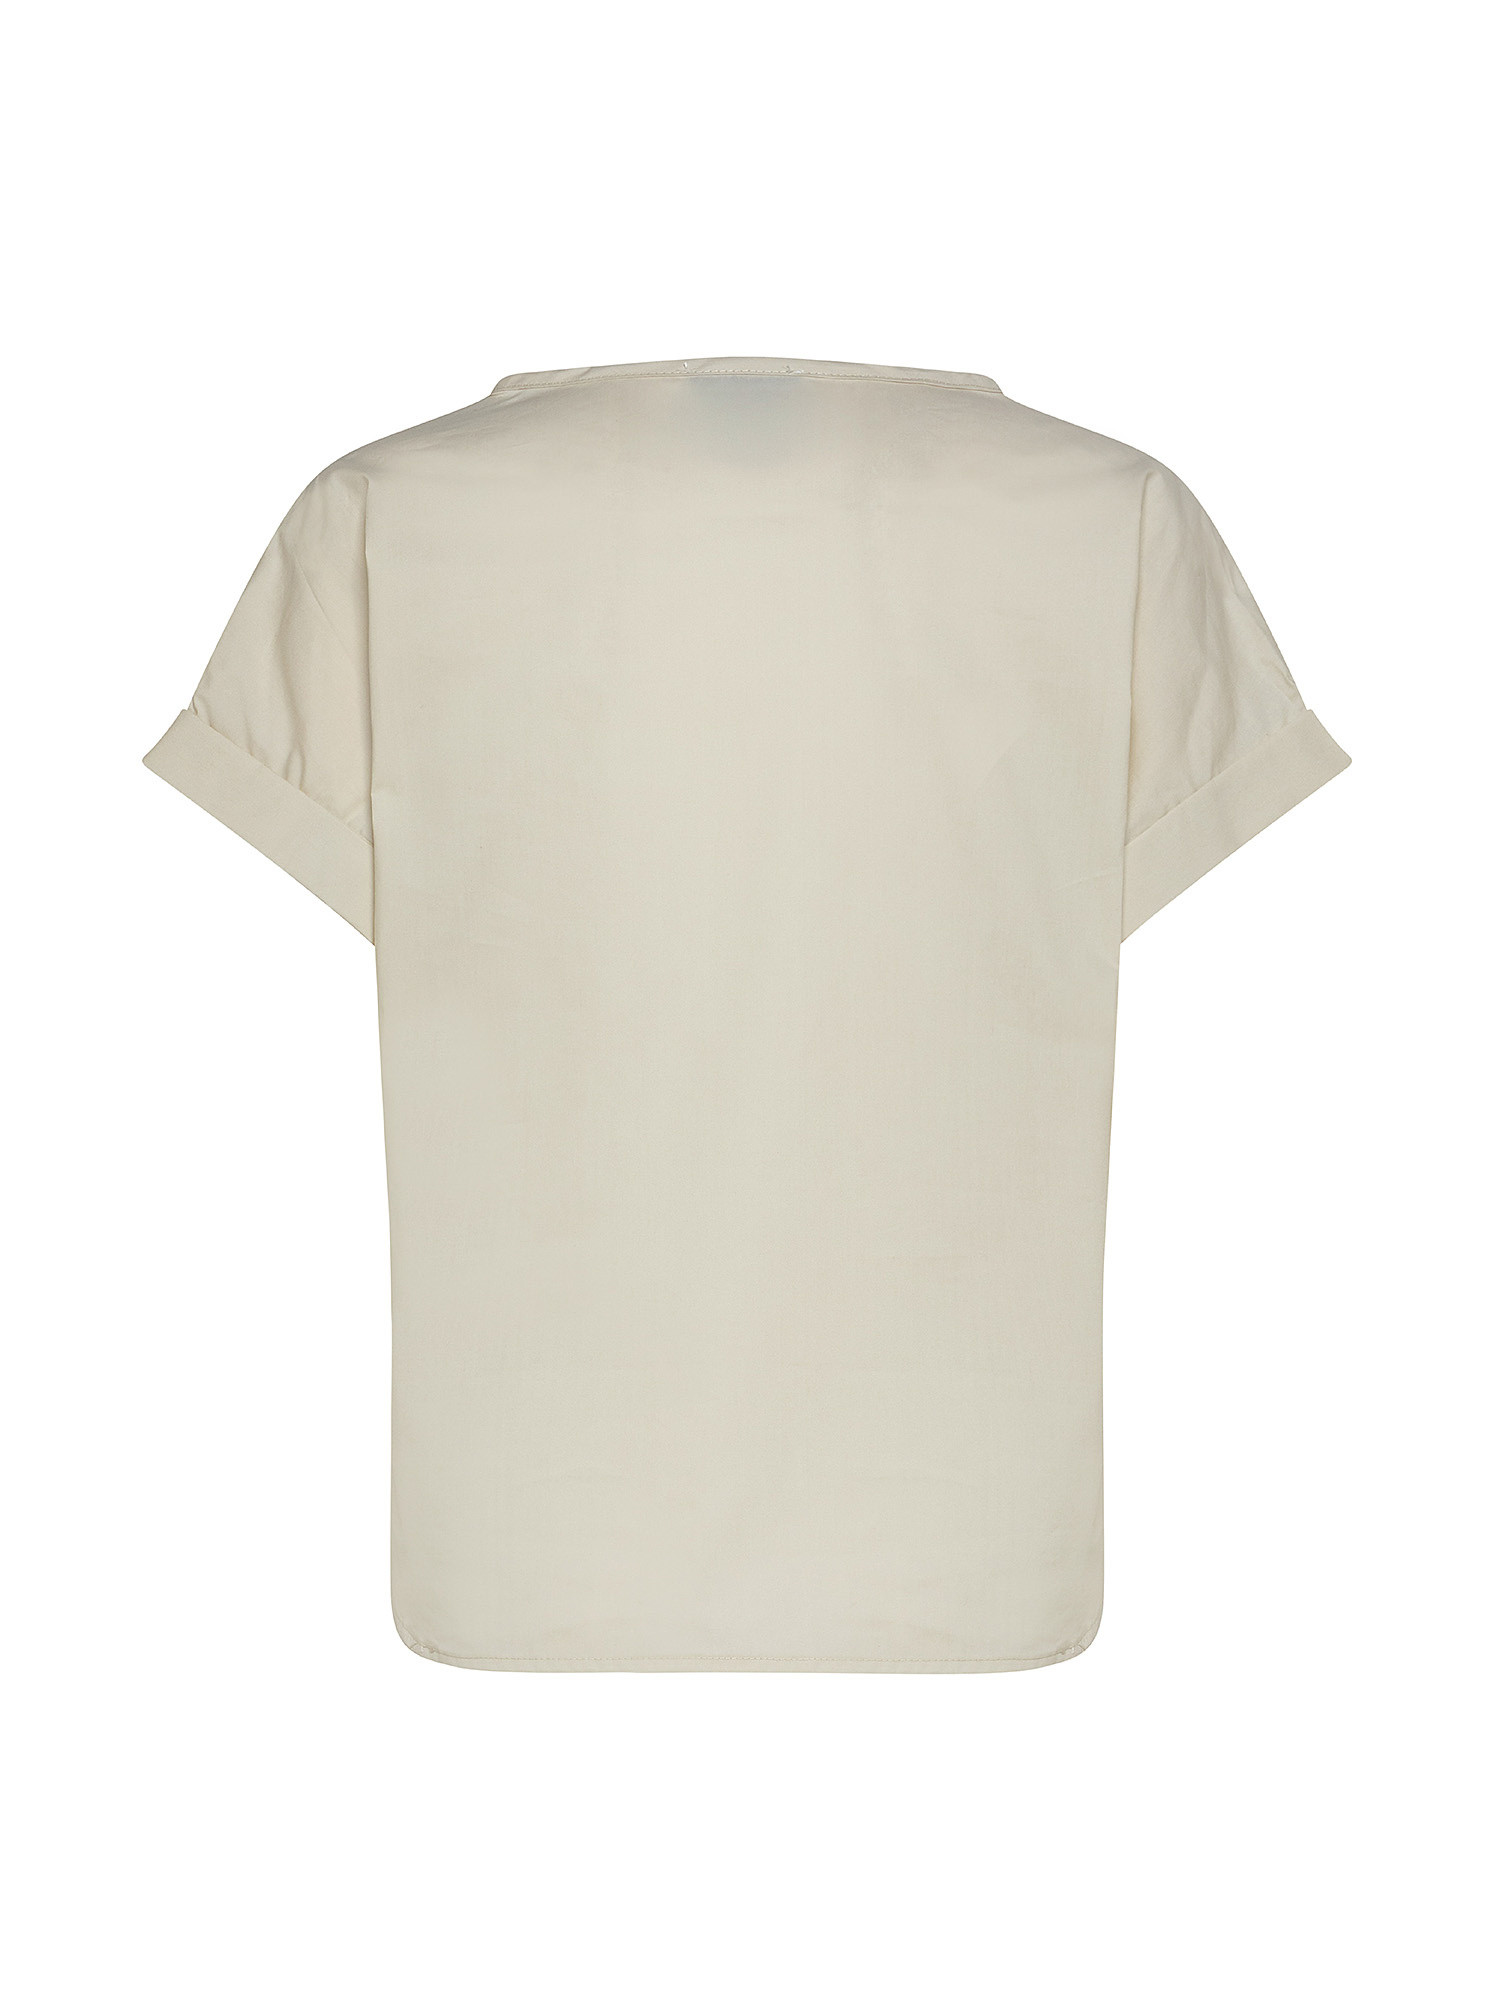 Boxy blouse, Beige, large image number 1